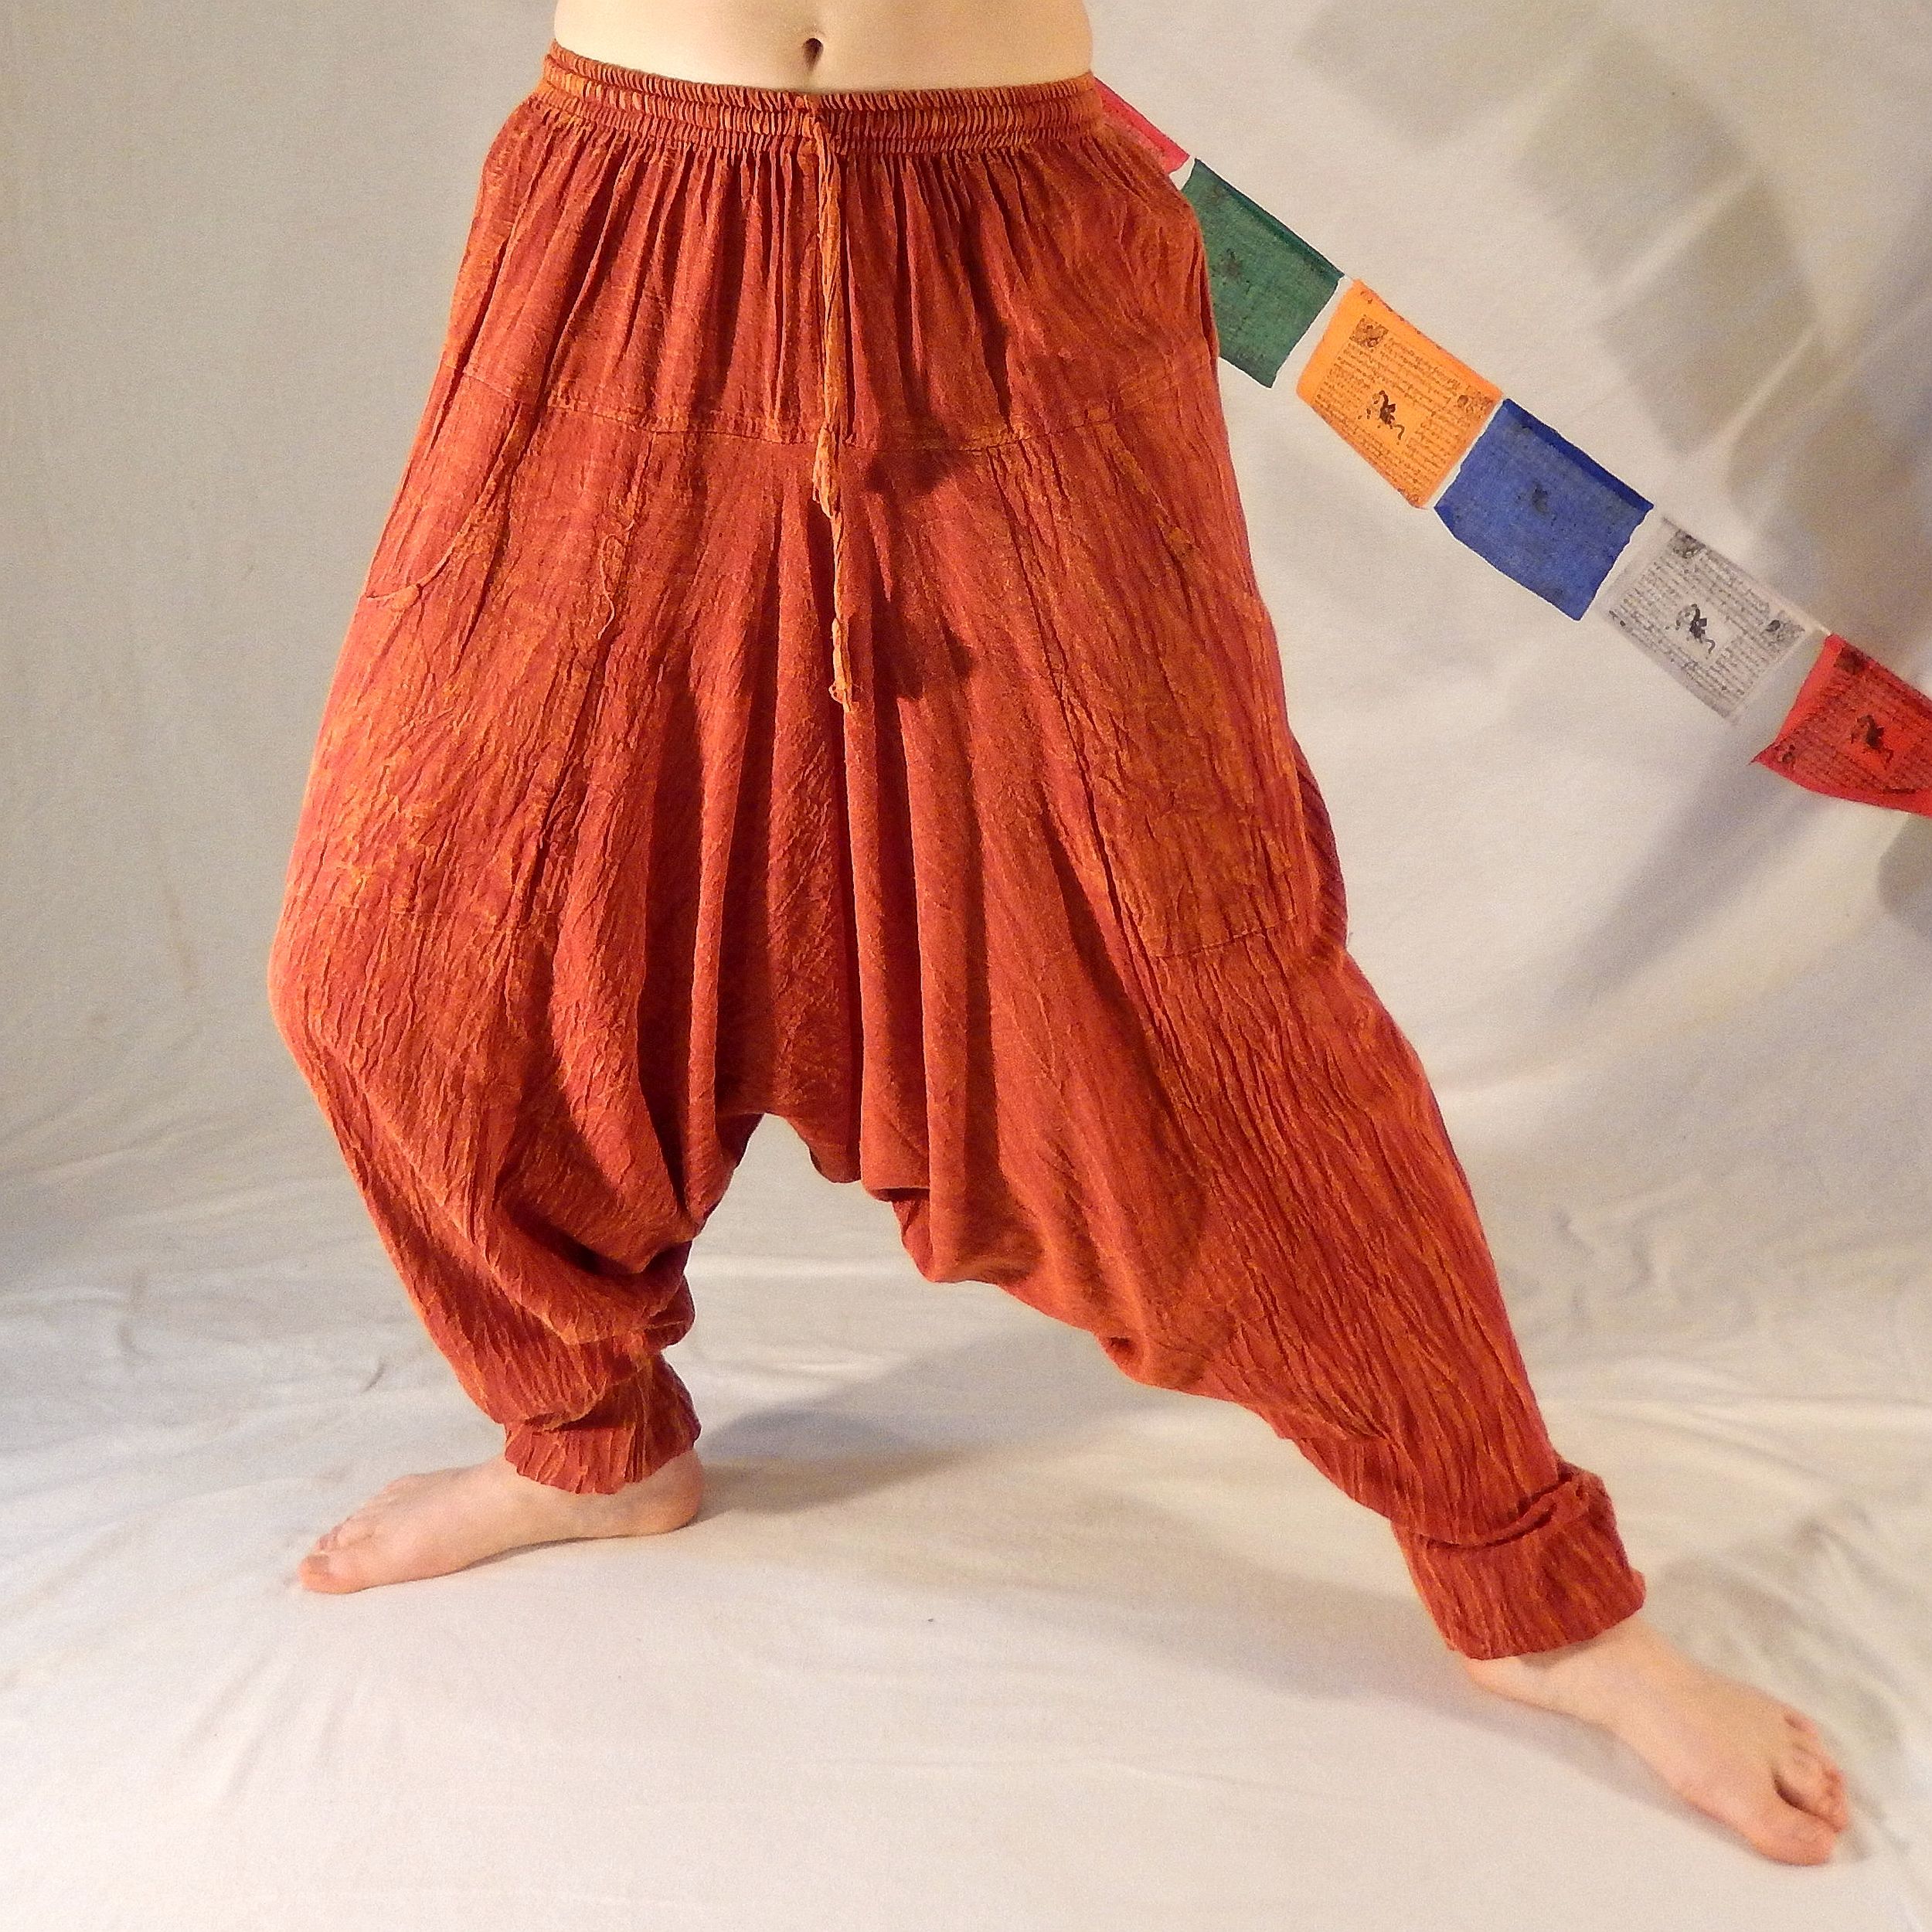 Haremshose - UniColor - Orange - 100% Baumwolle - Deine neue Lieblingshose für Yoga und mehr - Fair gehandelt aus Nepal